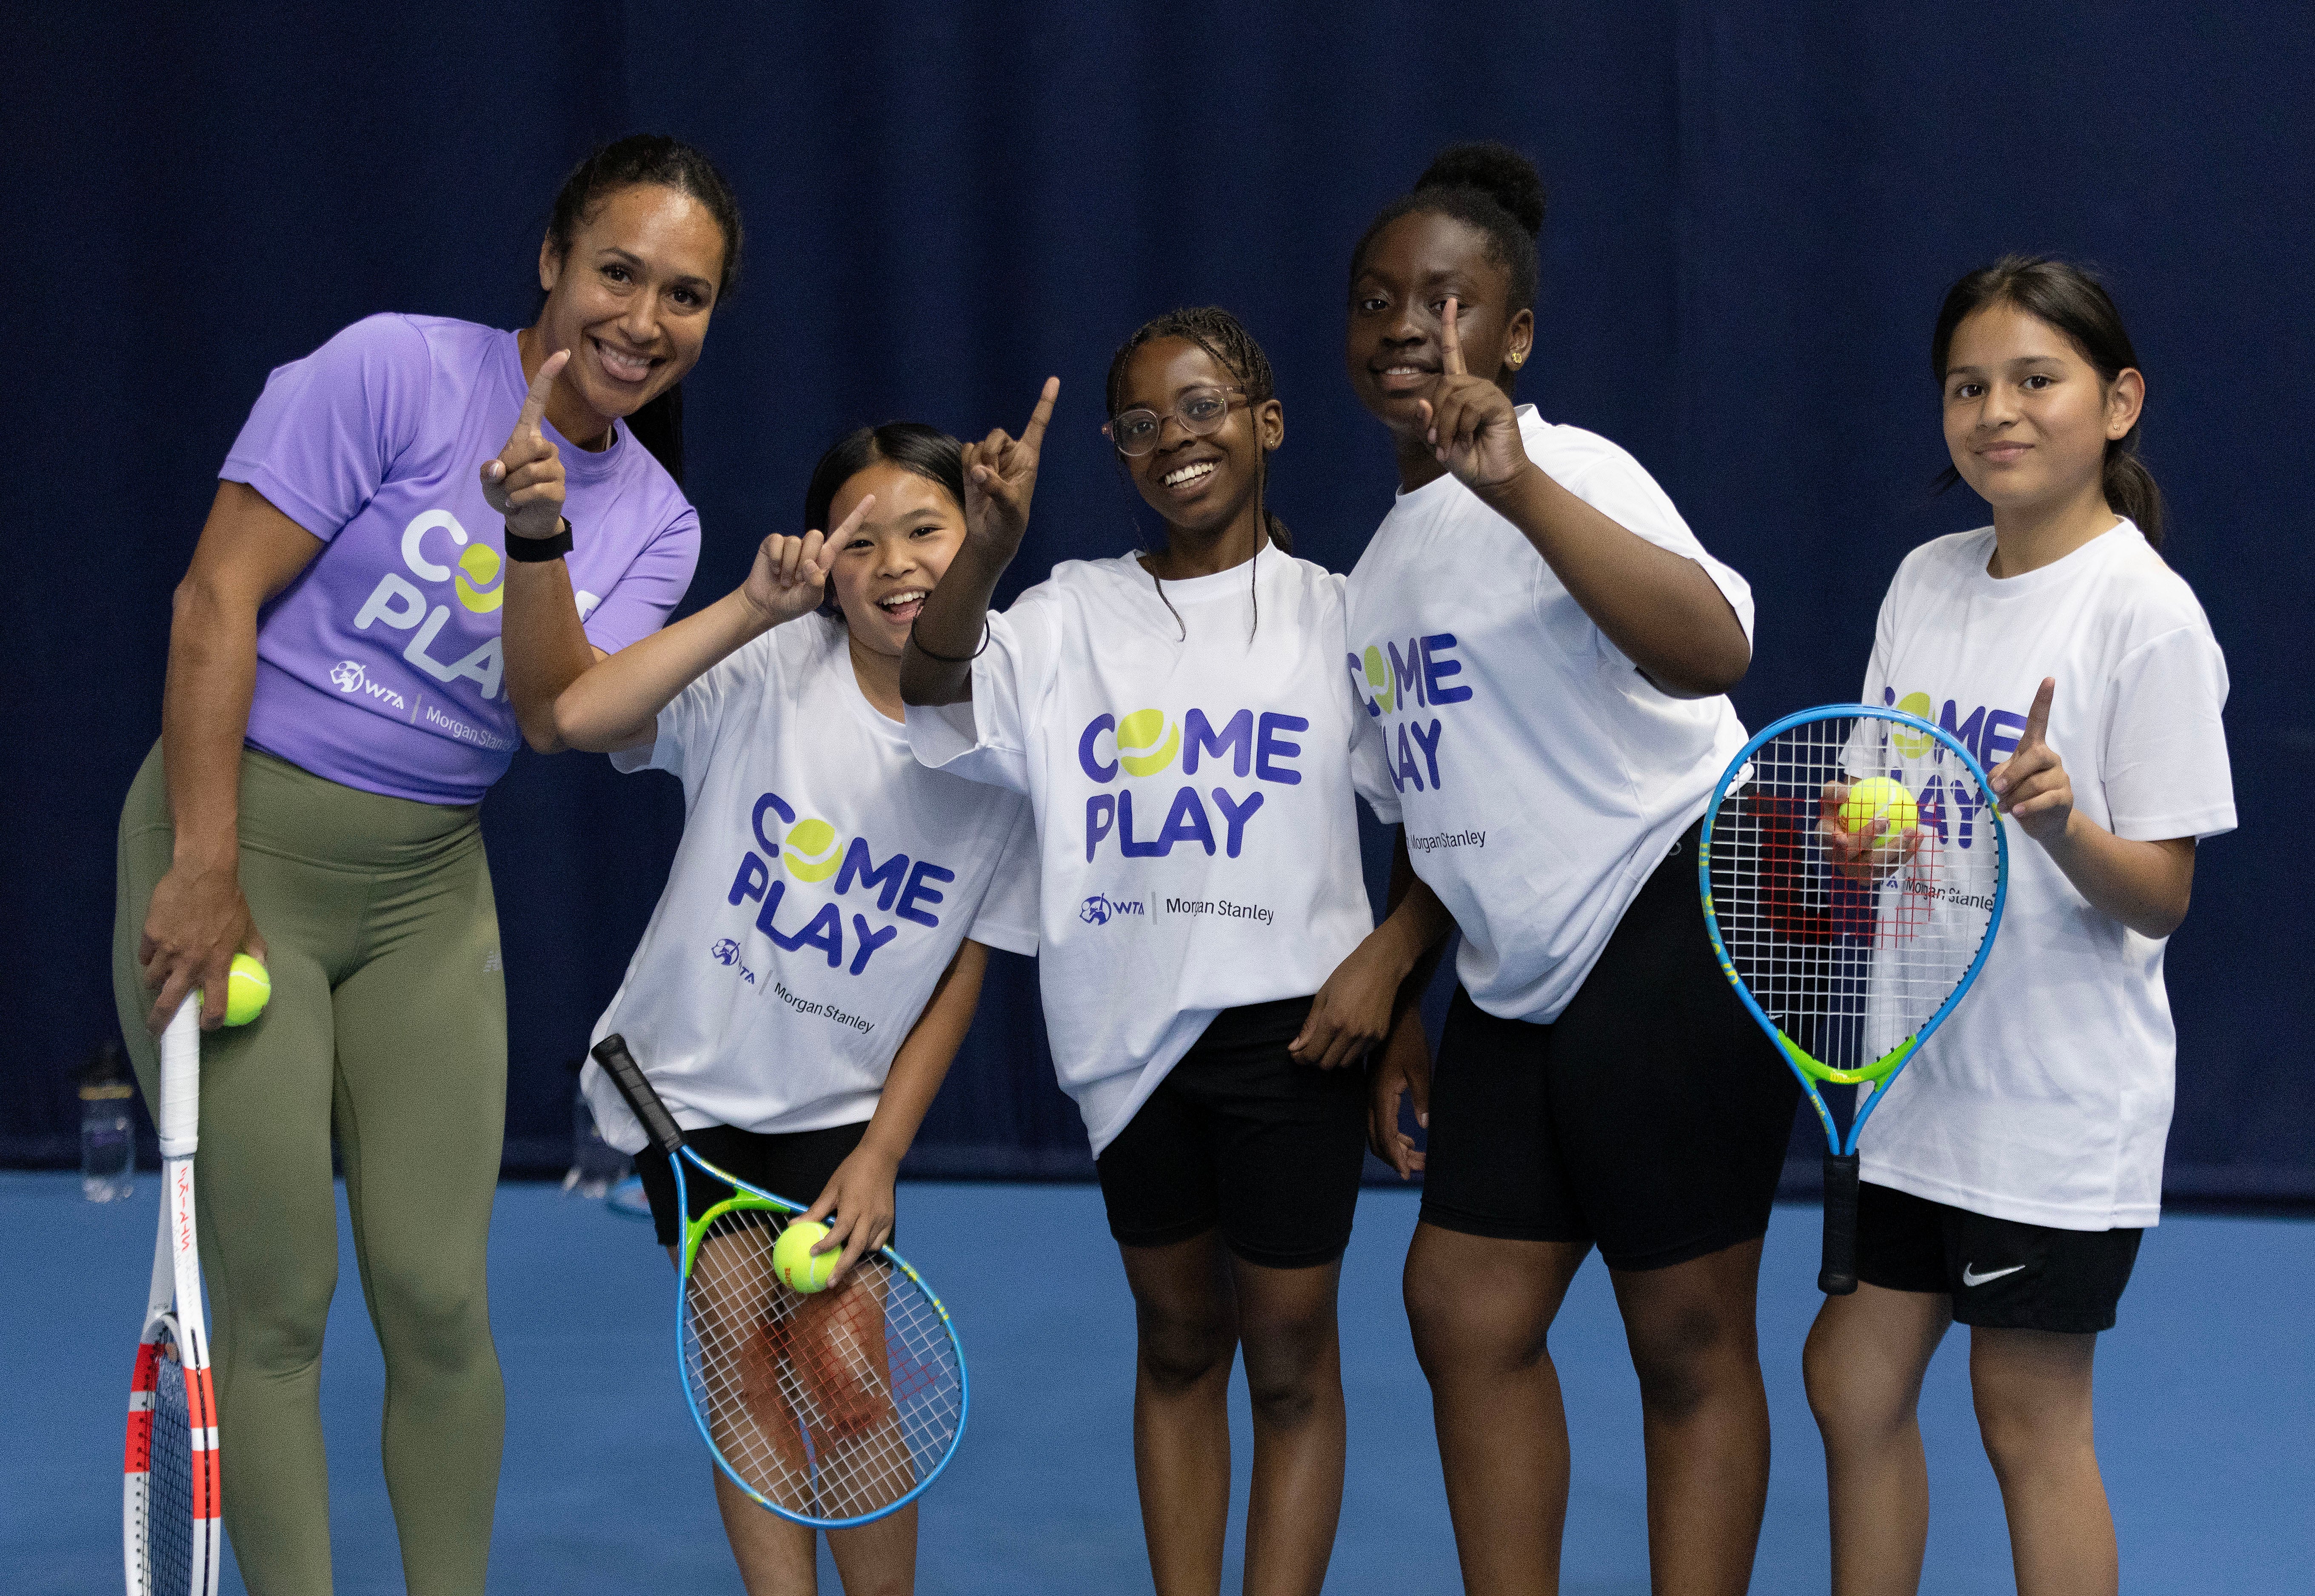 希瑟·沃森（左）在伦敦 (WTA) 摩根士丹利举办的“来玩耍日”上与埃琳娜·巴尔塔查基金会的孩子们合影